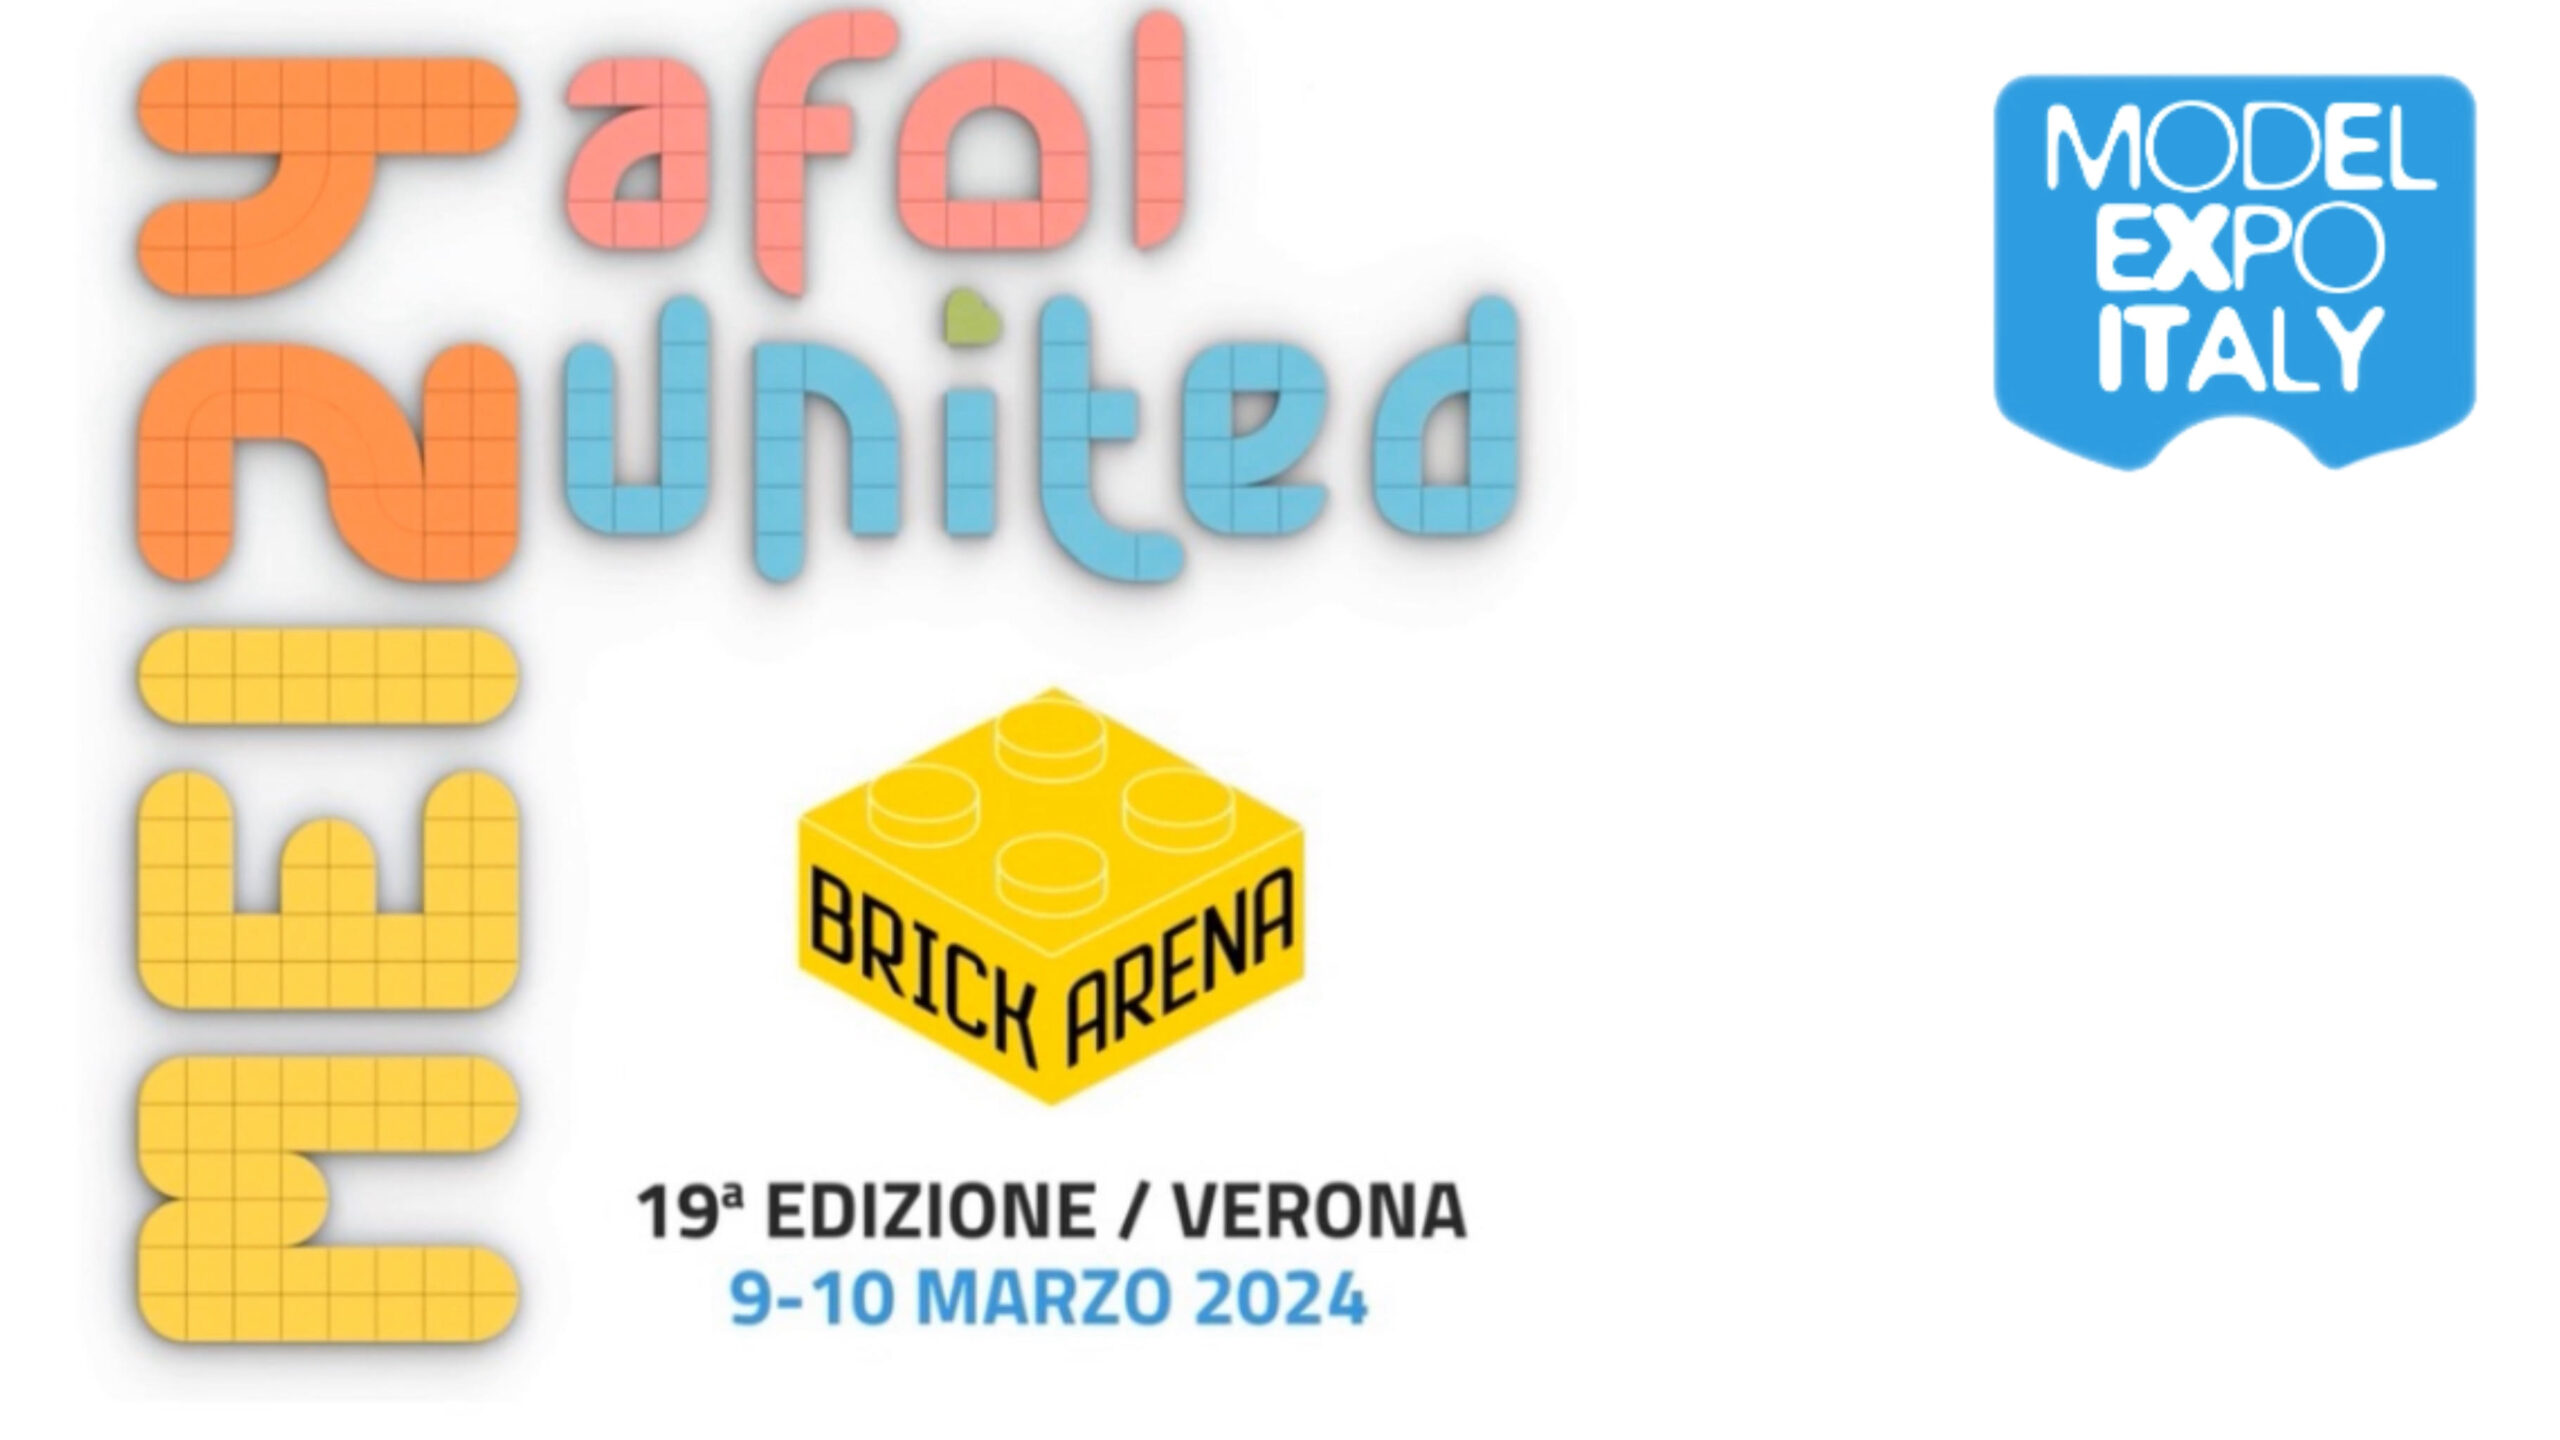 MODEL EXPO ITALY 2024 – VERONA 9 & 10 MARZO